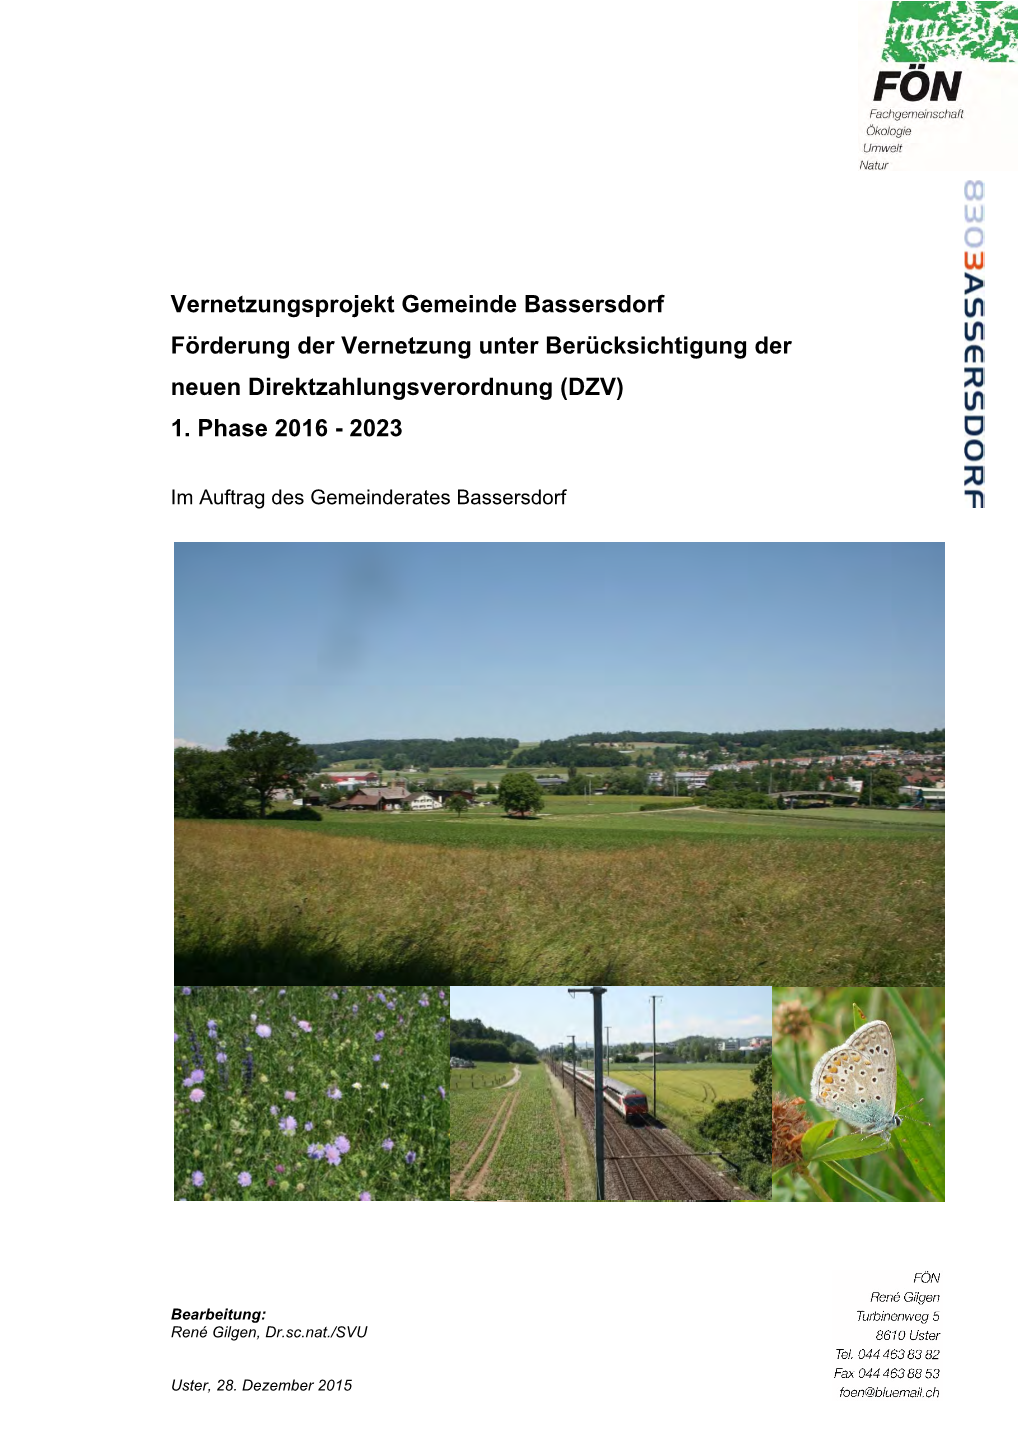 Bericht Vernetzungsprojekt Bassersdorf, 1. Phase 2016